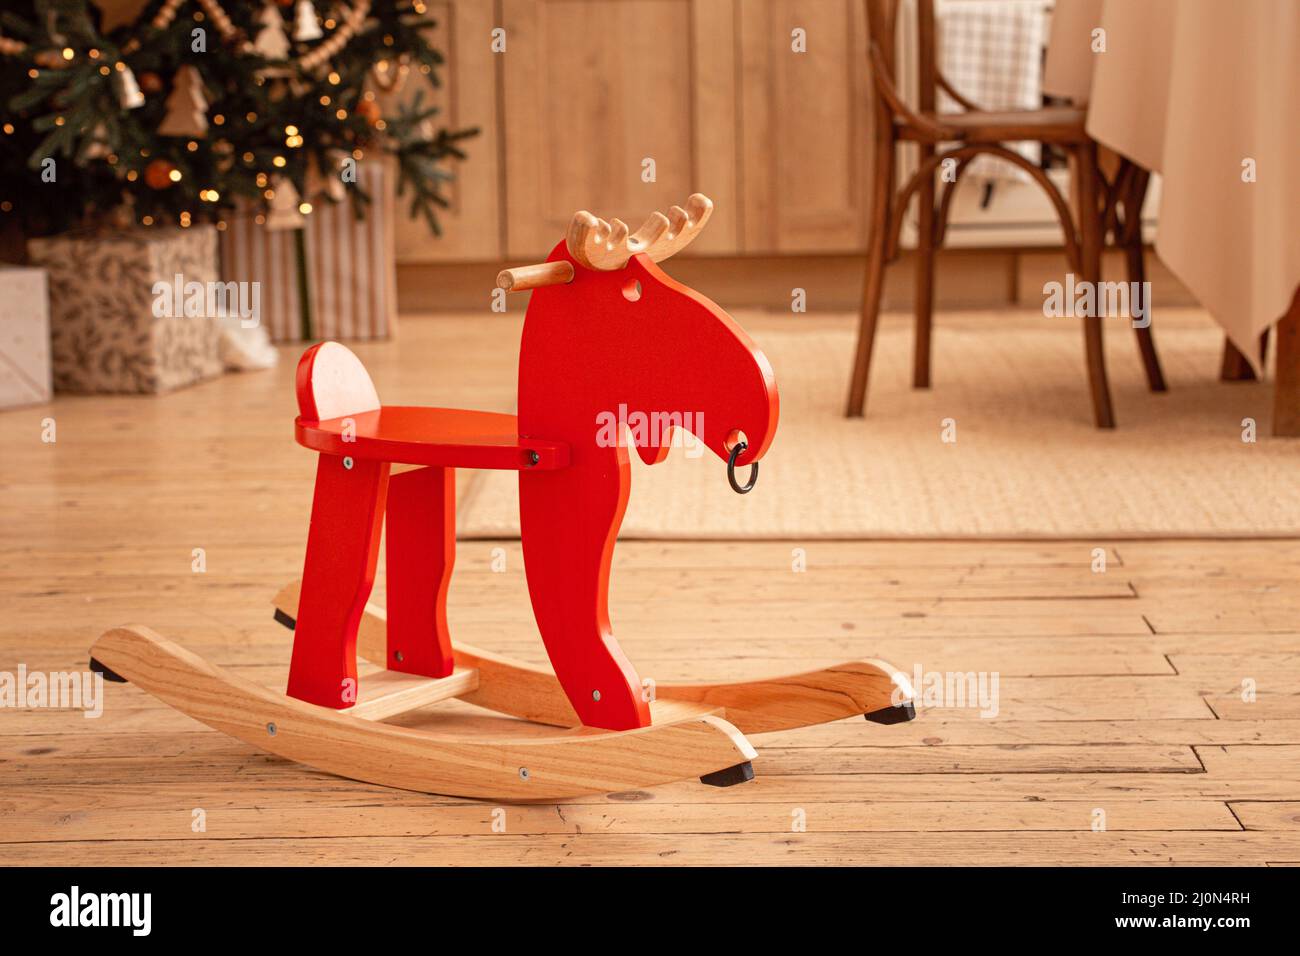 Cavallo a dondolo rosso con decori natalizi - Mobilia Store Home